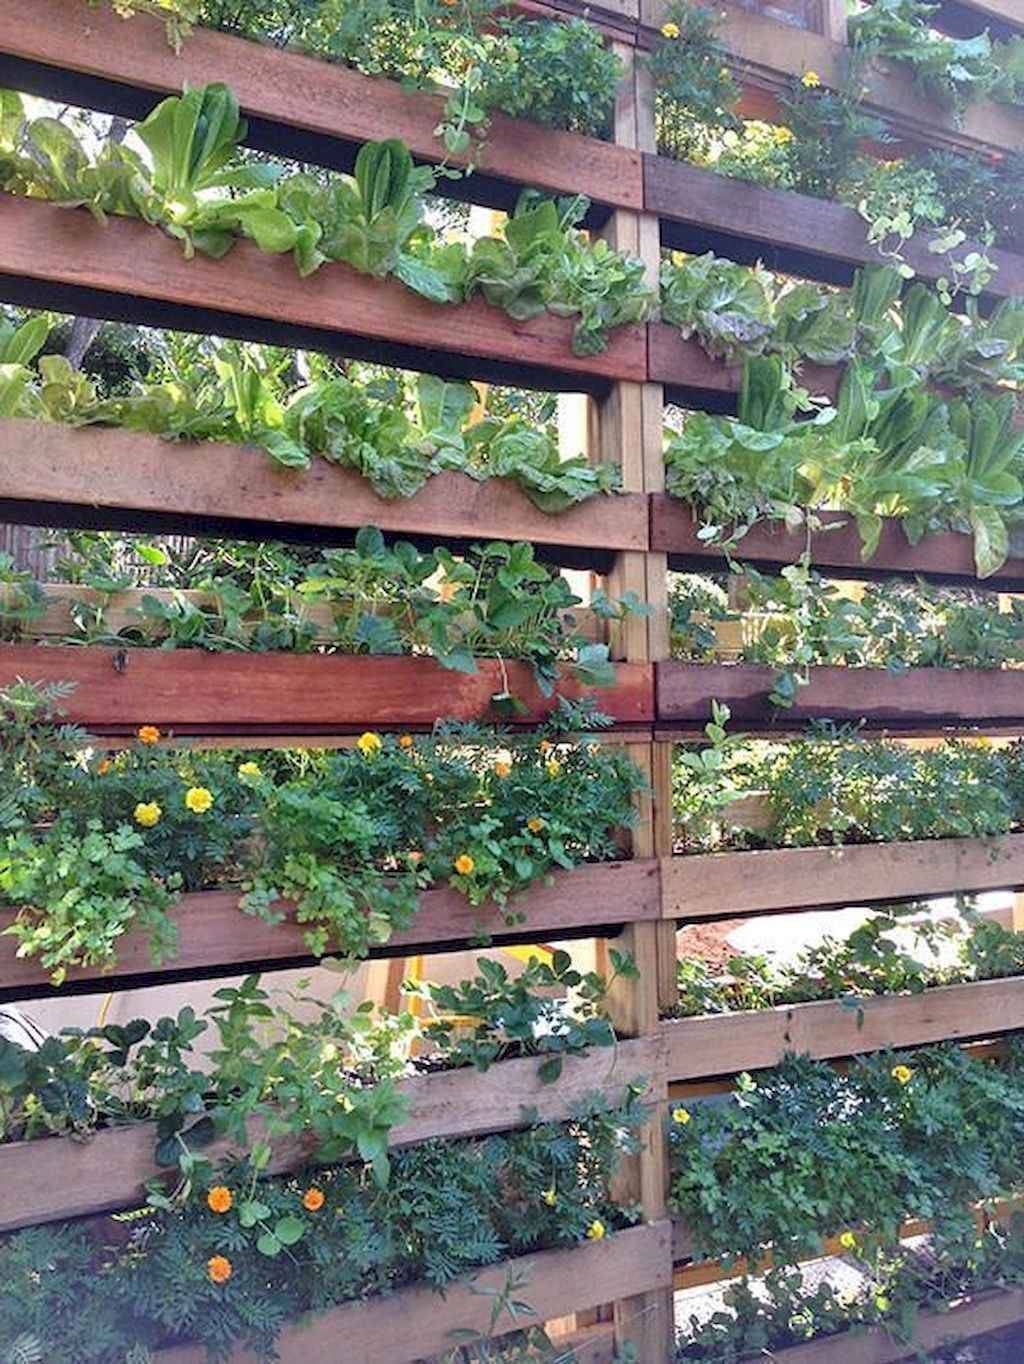 Living Wall Systems Vertical Garden